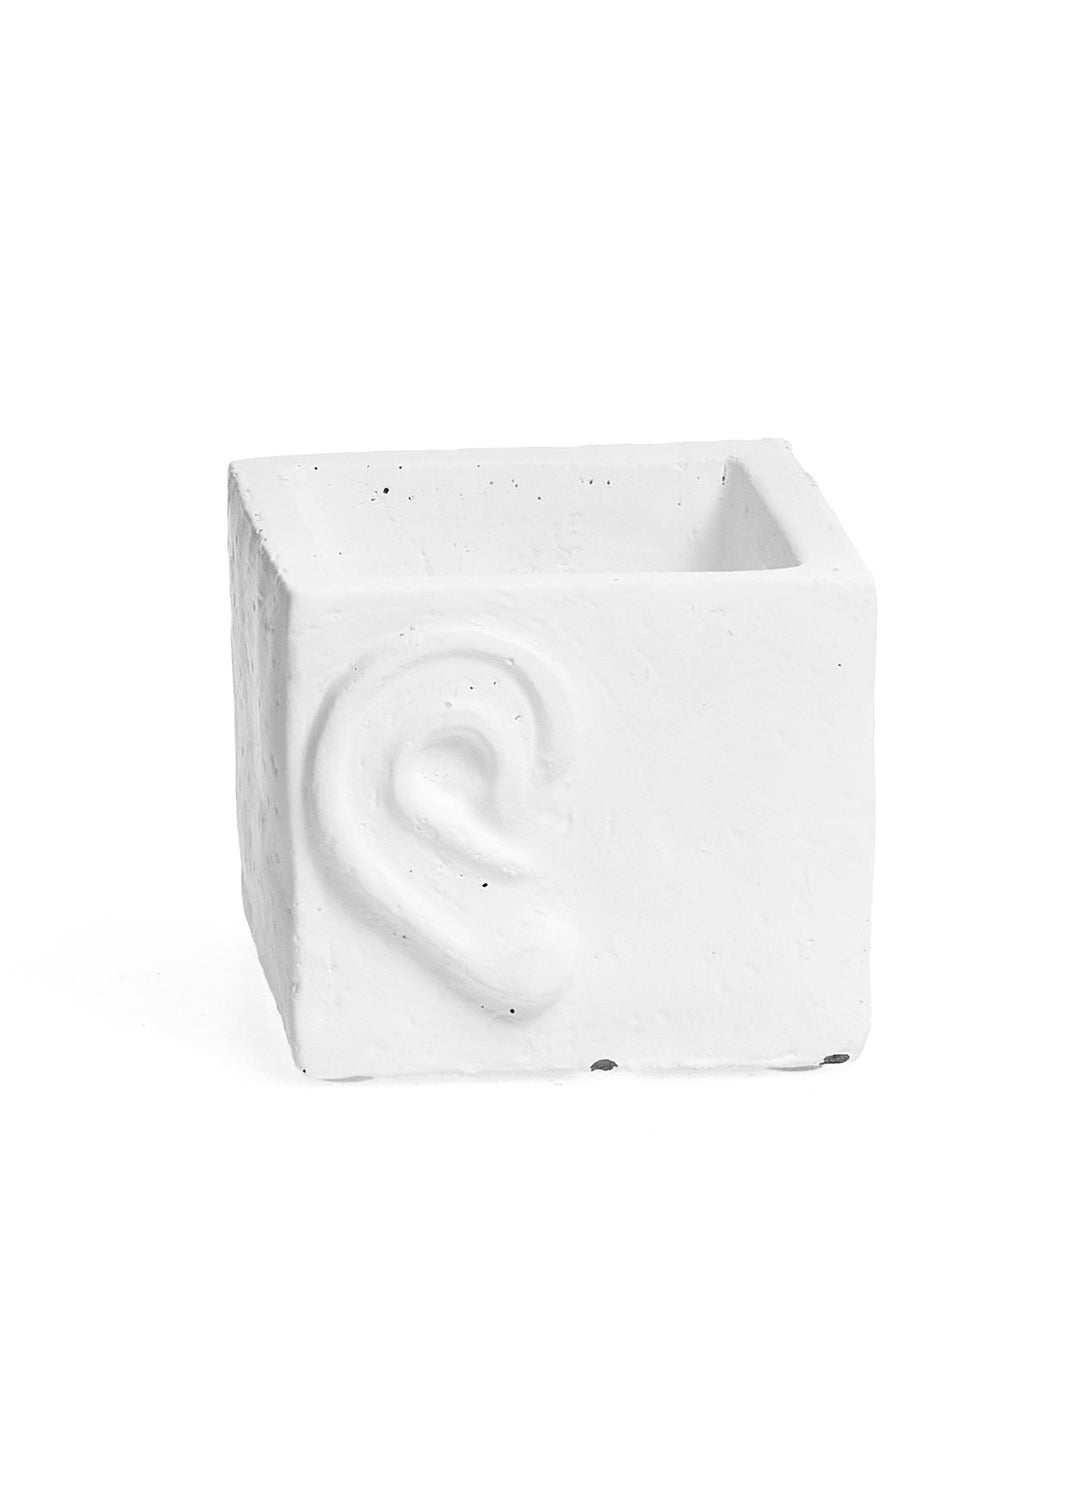 HEAR SMALL PLANTER CEMENT WHITE